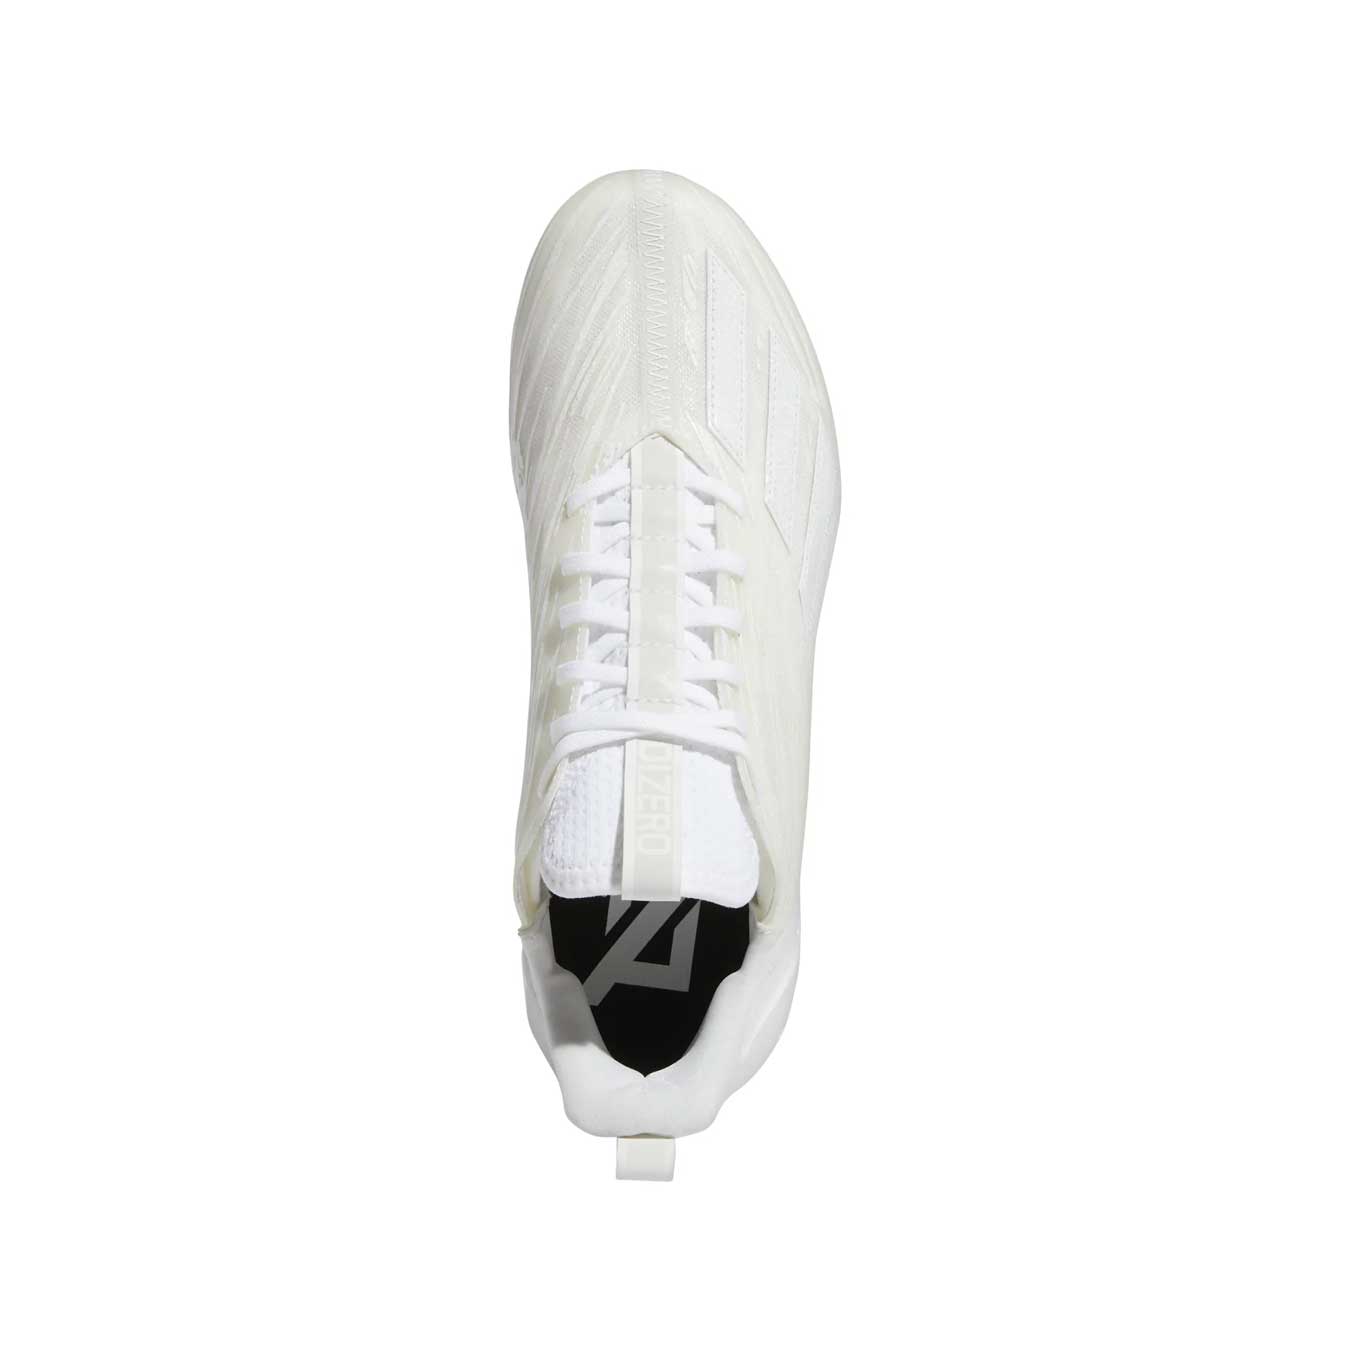 Adidas adizero White/White/White Football Cleat